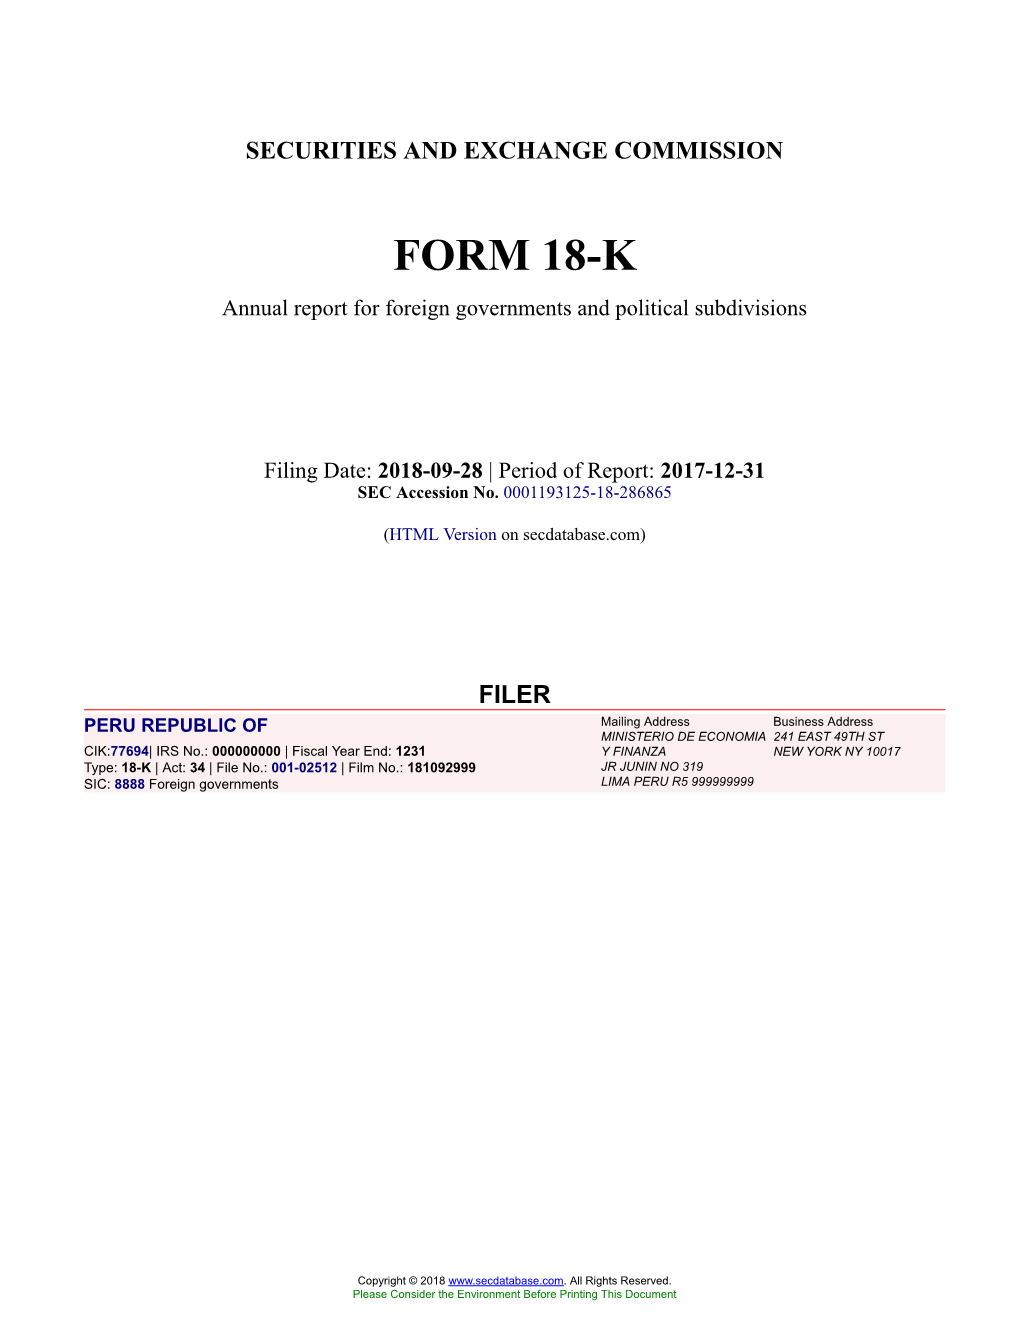 PERU REPUBLIC of Form 18-K Filed 2018-09-28